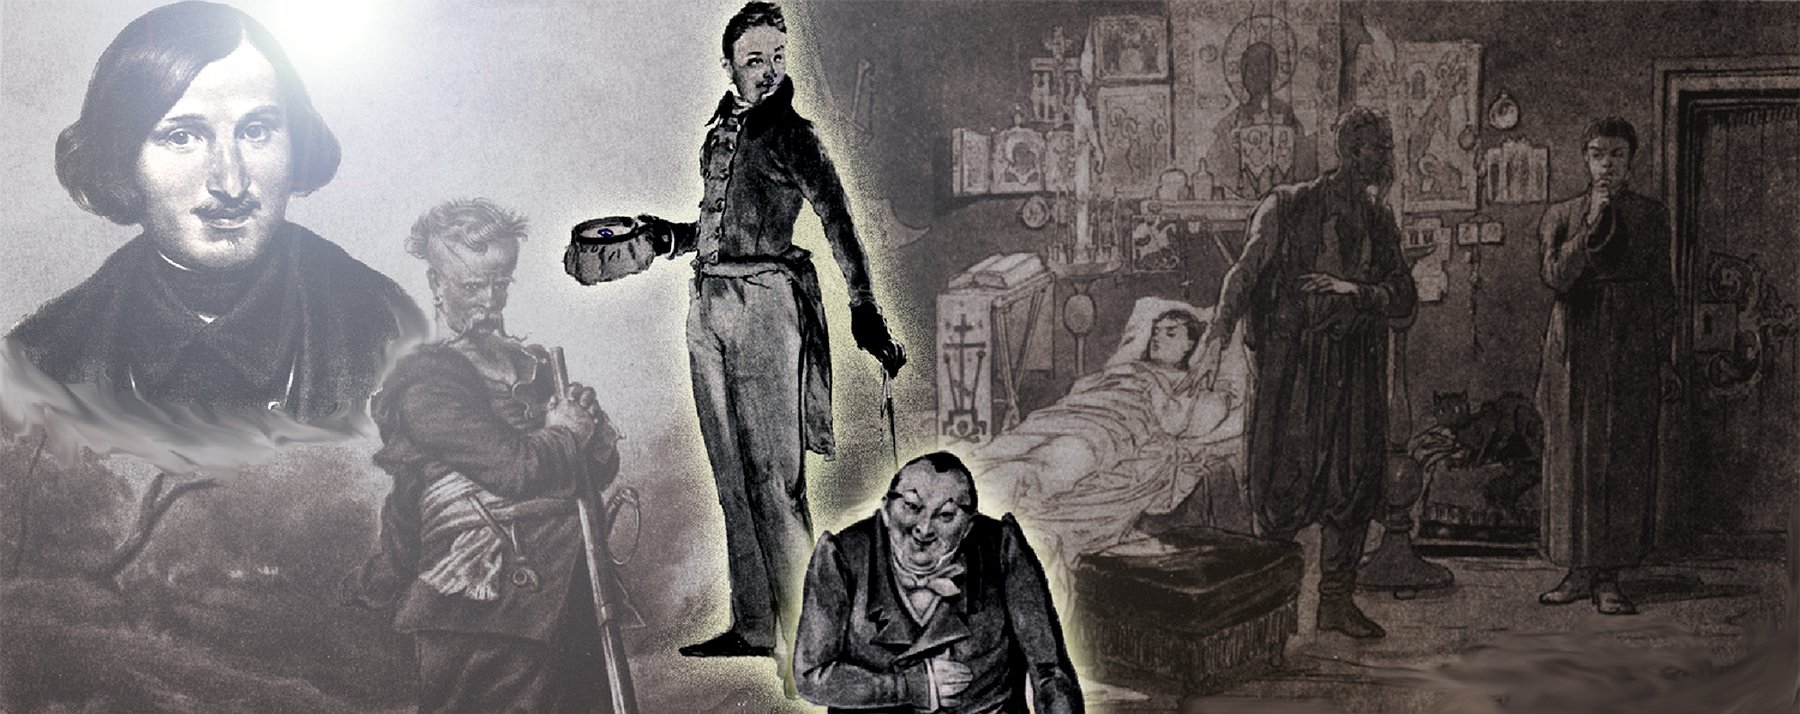 Фрагмент из произведения гоголя. Кукрыниксы иллюстрации к Гоголю. Дело о мертвых душах.